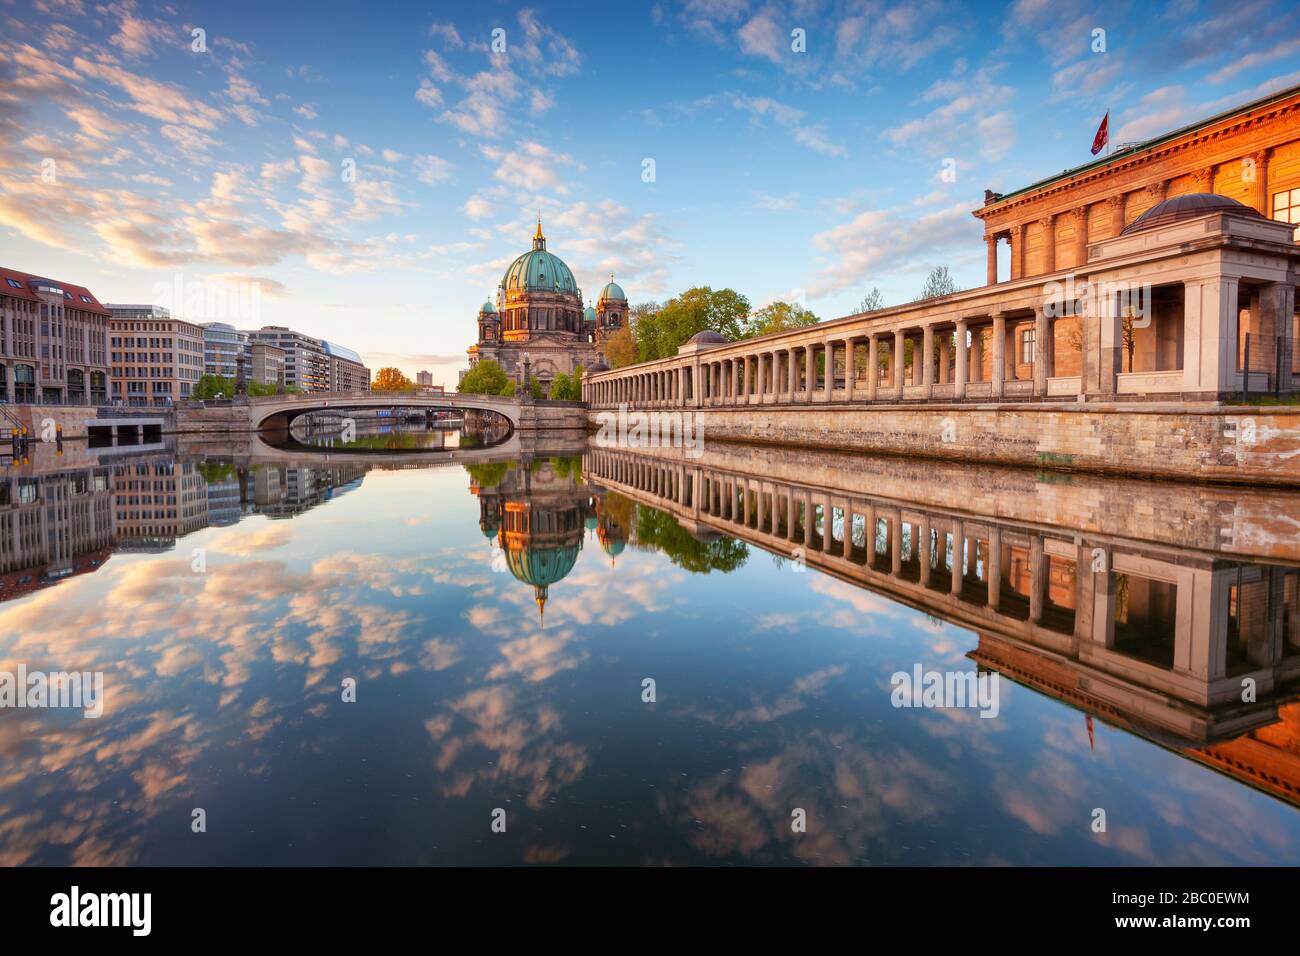 Berlino, Germania. Immagine della Cattedrale di Berlino e dell'Isola dei Musei di Berlino durante l'alba Foto Stock